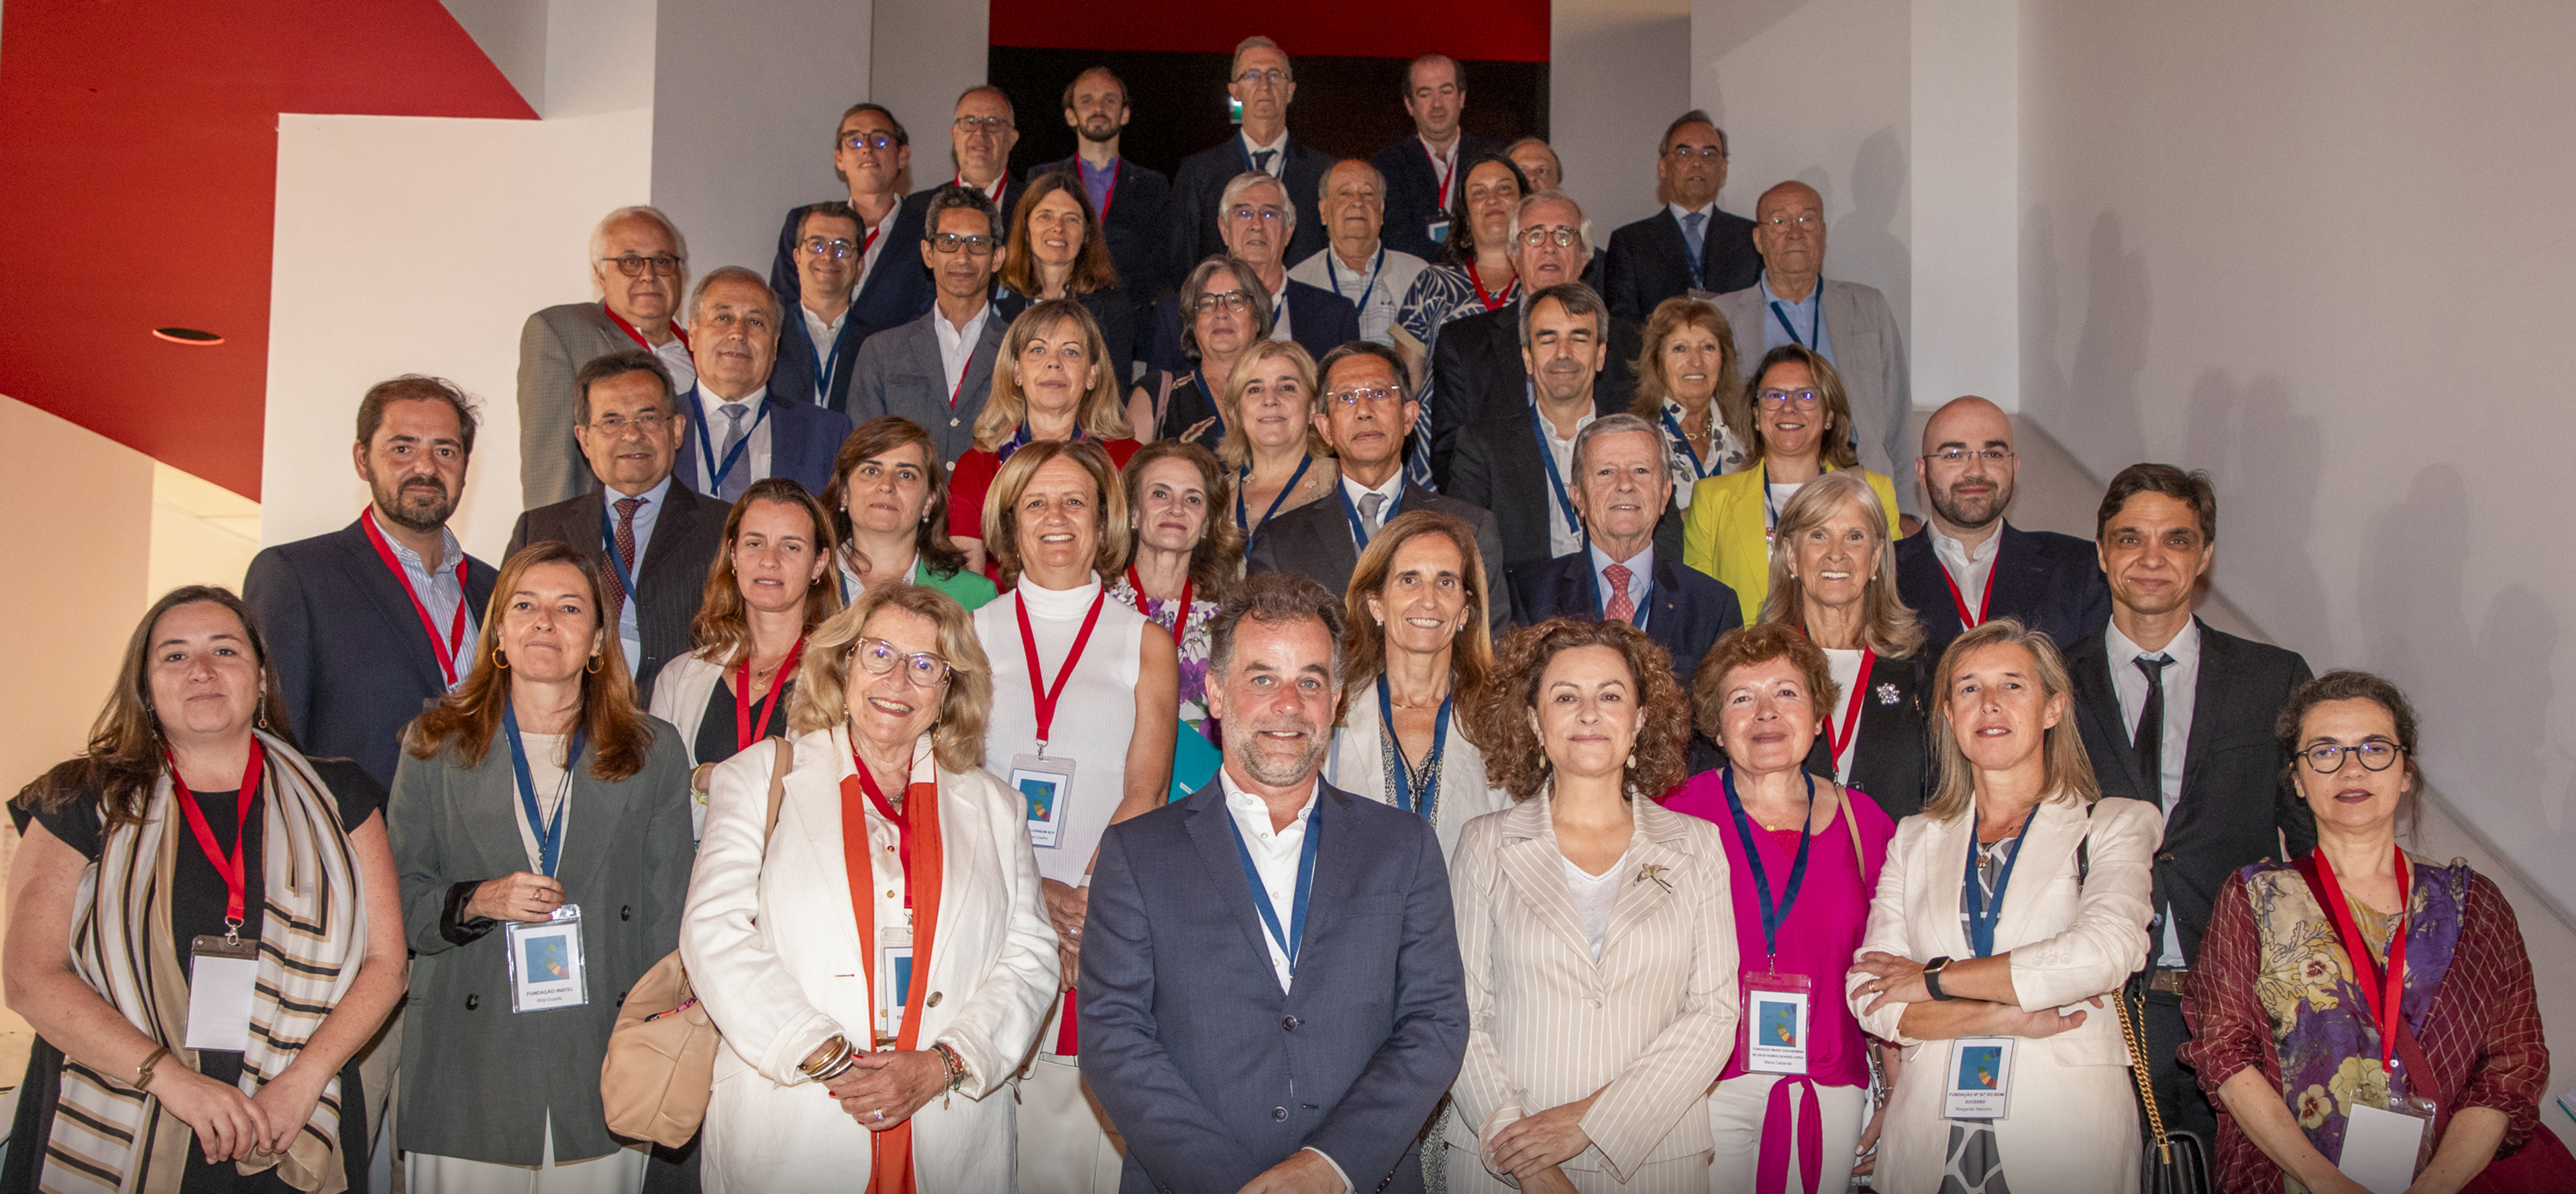 assinatura da Convenção pela Implementação dos Objetivos de Desenvolvimento Sustentável em Portugal